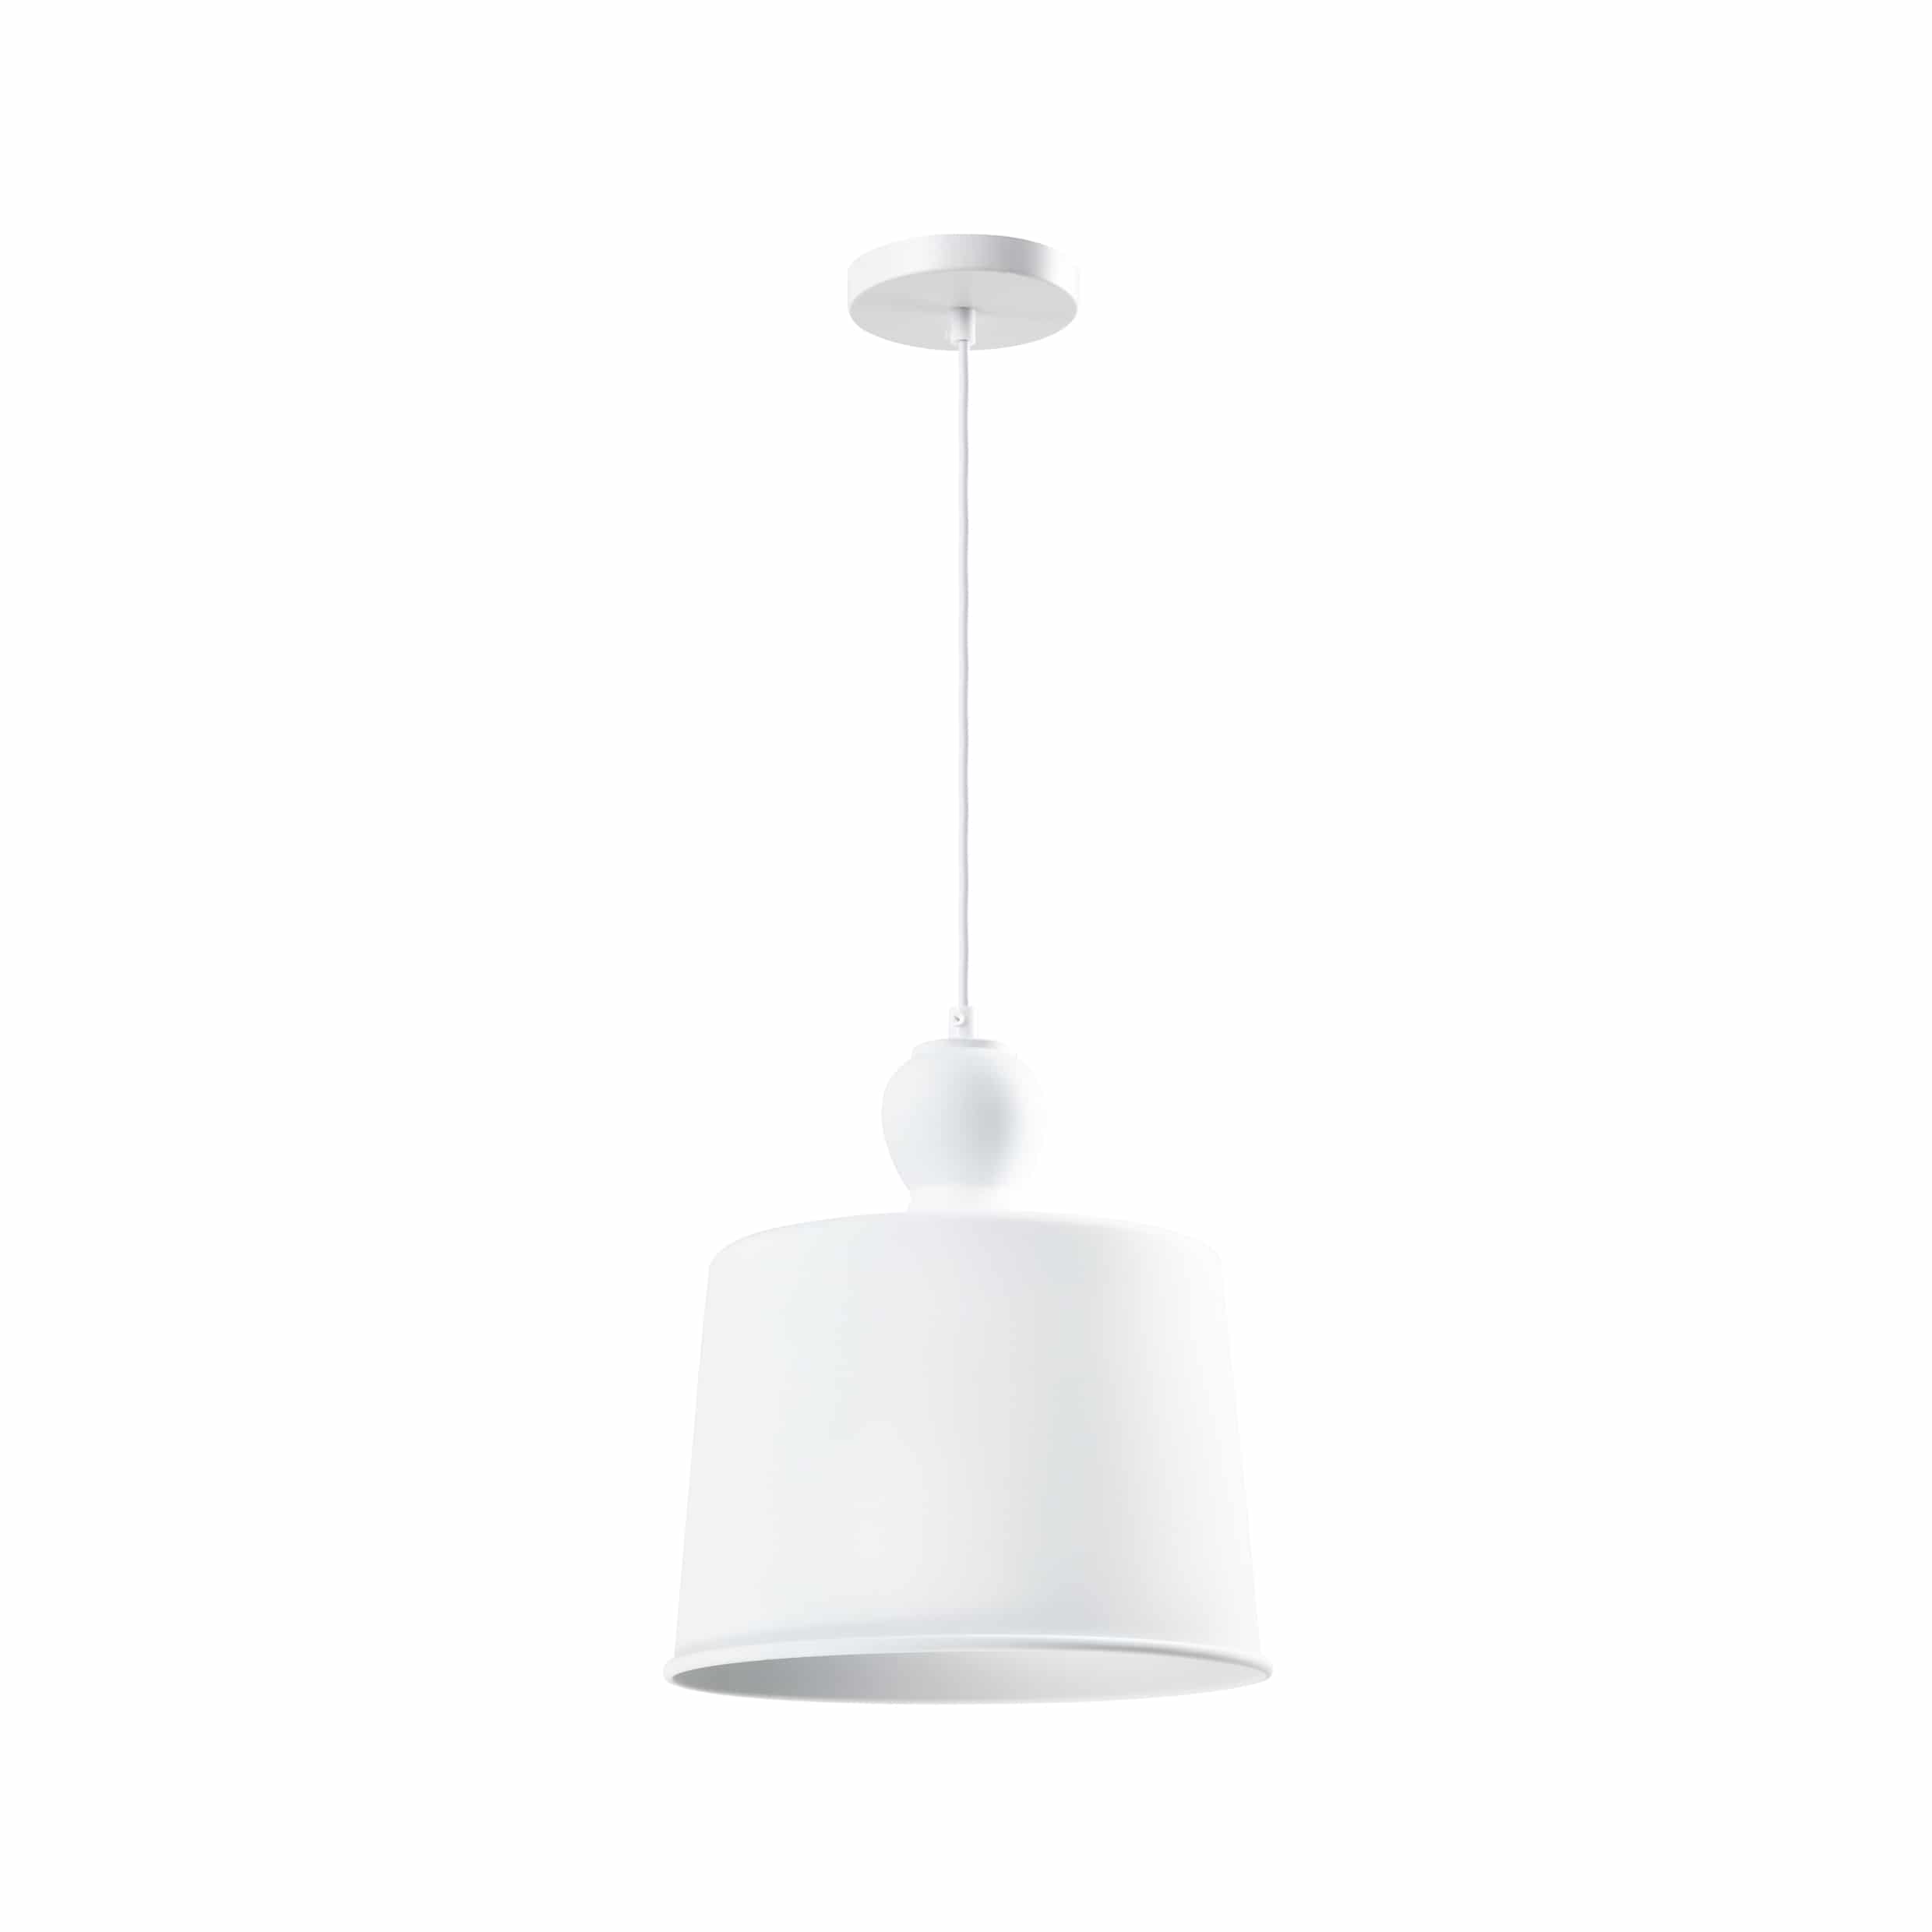 Retro hanglampen in het wit met een diameter van 25 cm